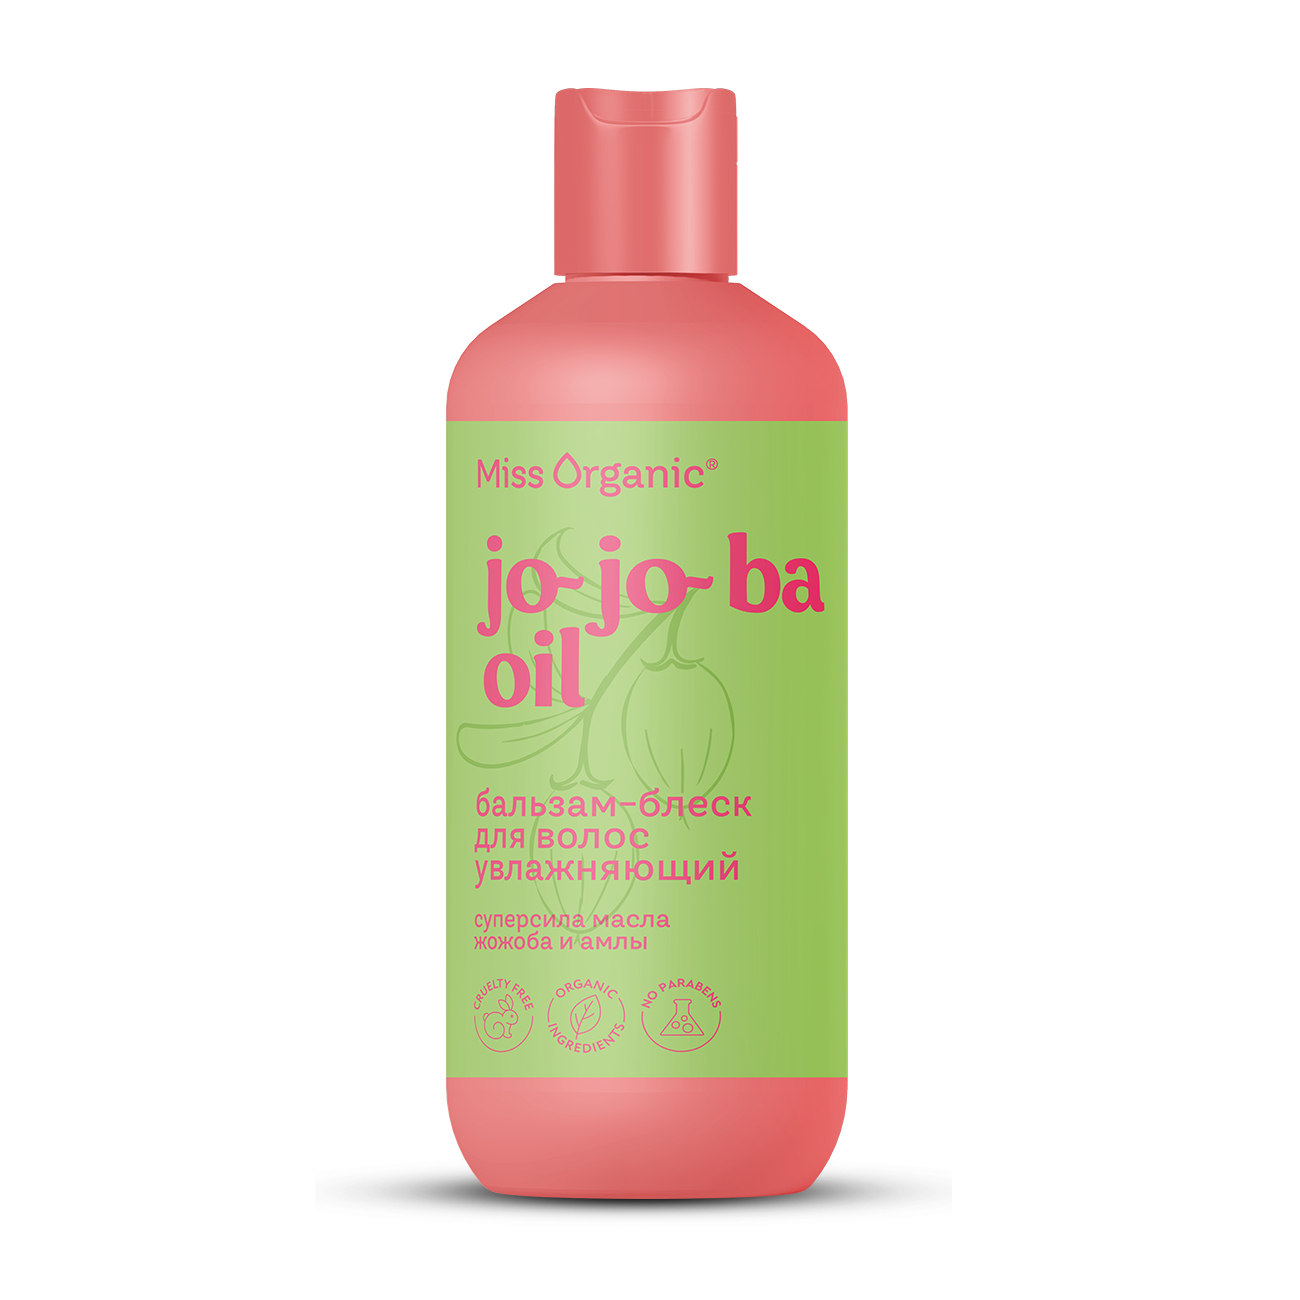 Бальзам для волос Miss Organic Jo-jo-ba Oil увлажняющий, 290 мл